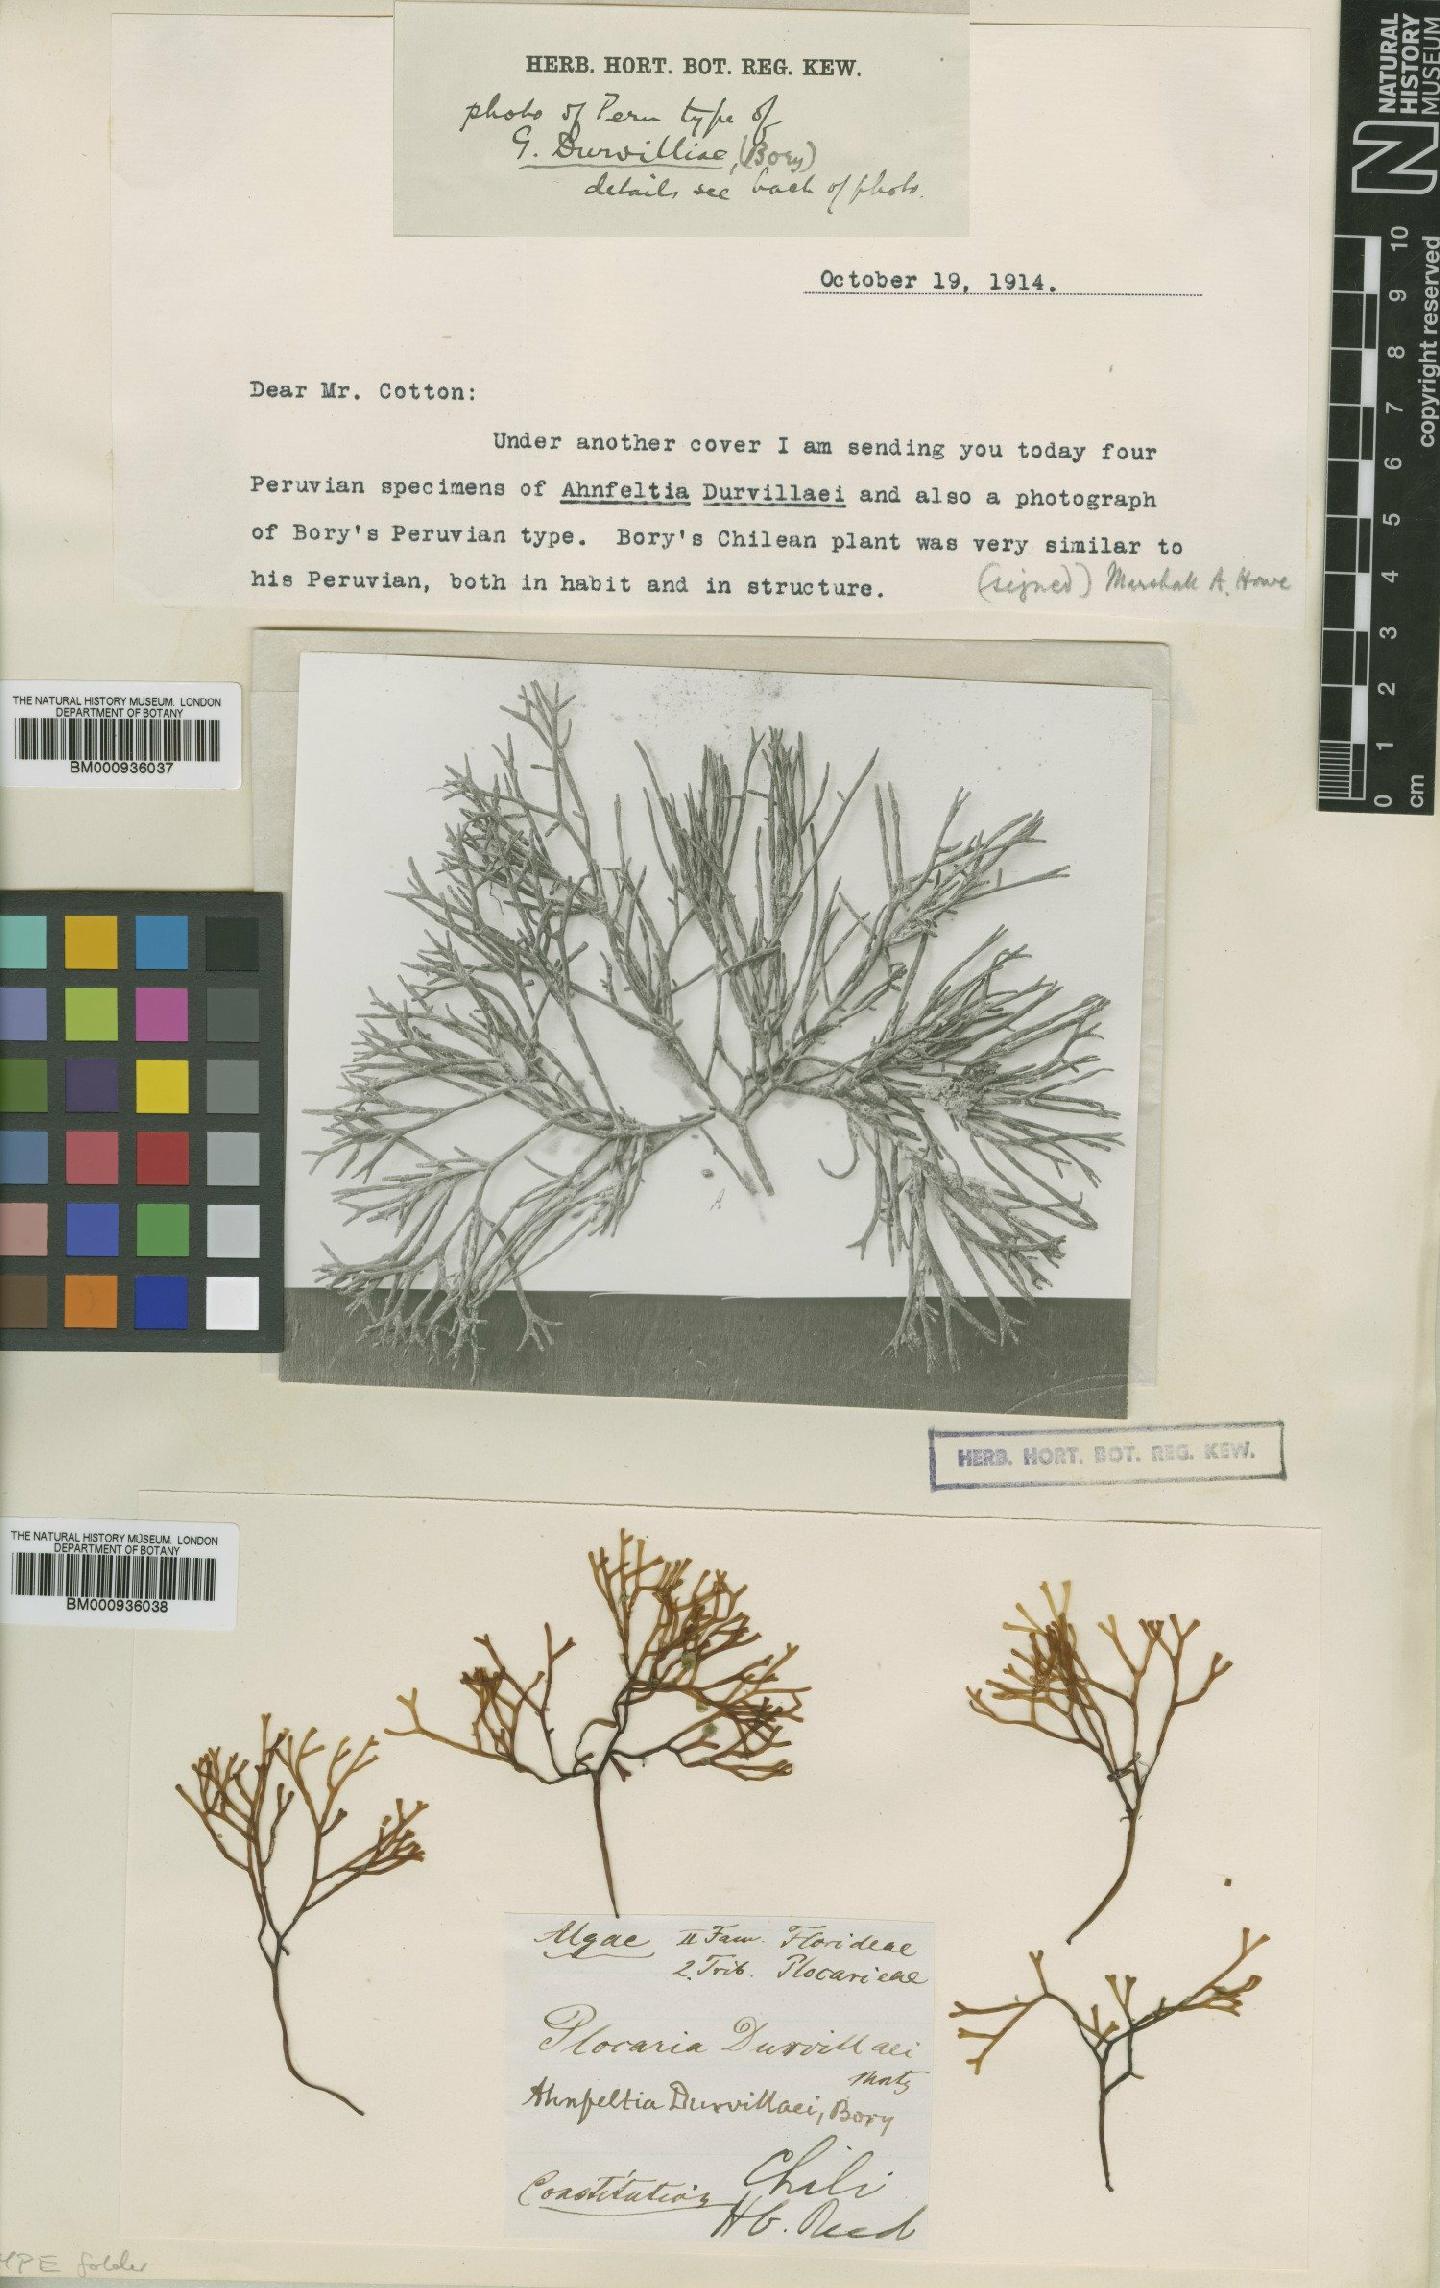 To NHMUK collection (Ahnfeltia durvillei Bory; NHMUK:ecatalogue:432308)